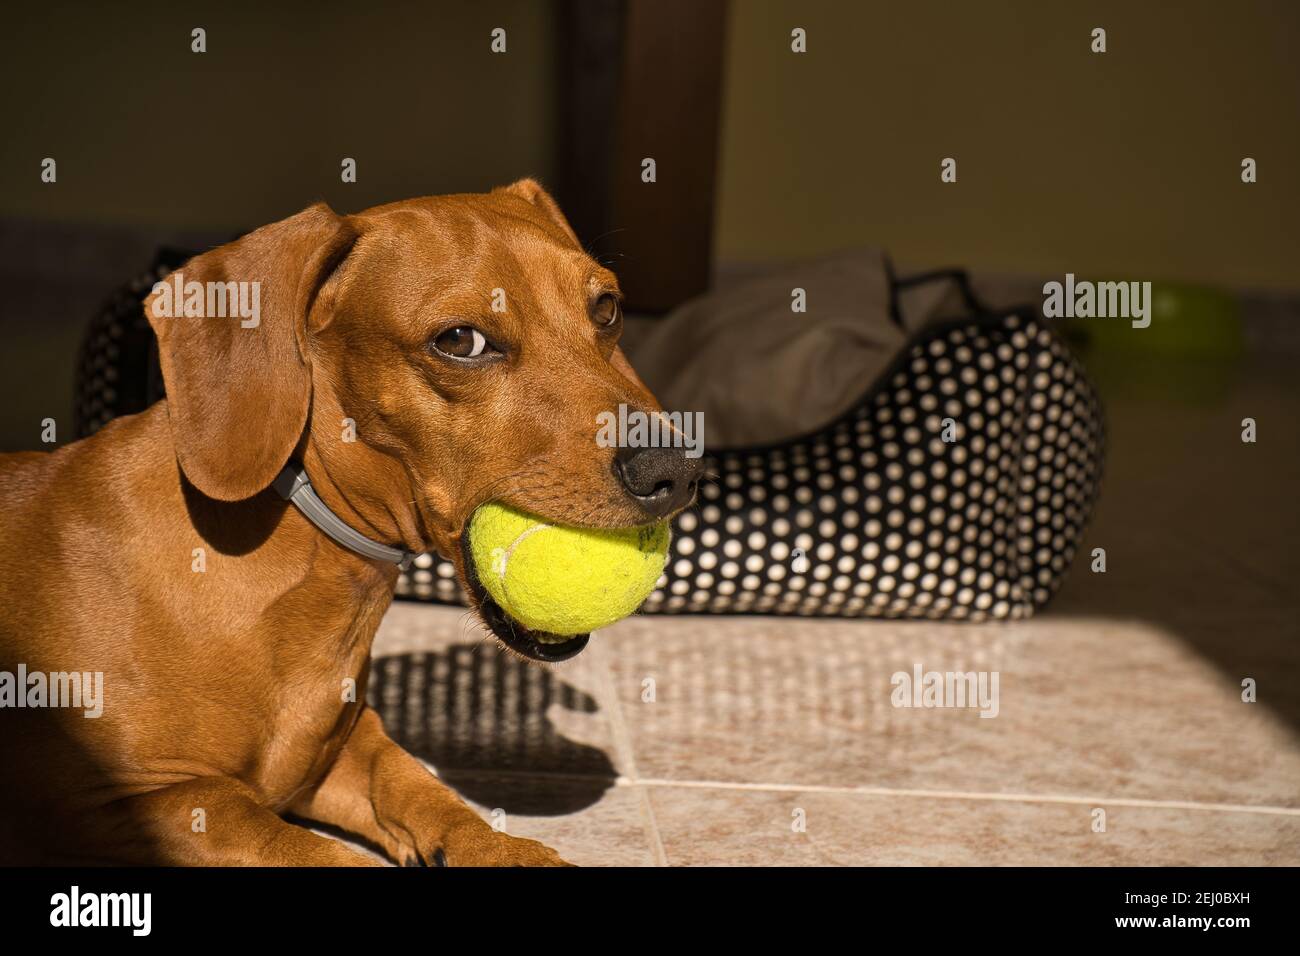 Bellissimo cane dachshund purebred, chiamato anche un dachshund, cane viennese, o cane salsiccia, giocando con una palla da tennis gialla. Cane che gioca Foto Stock